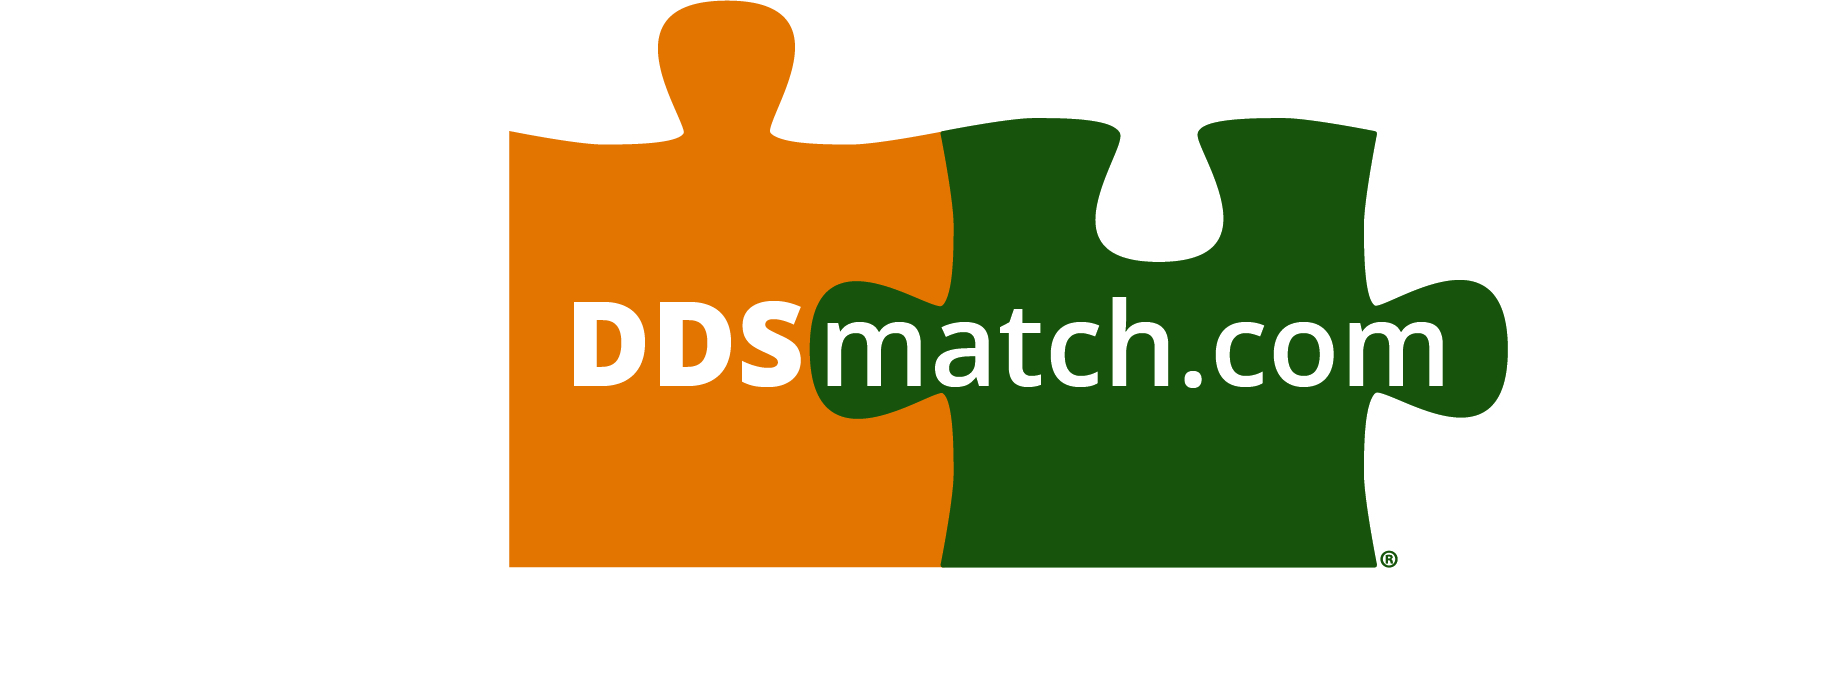 ddsmatch.com - Mara Saucedo Logo